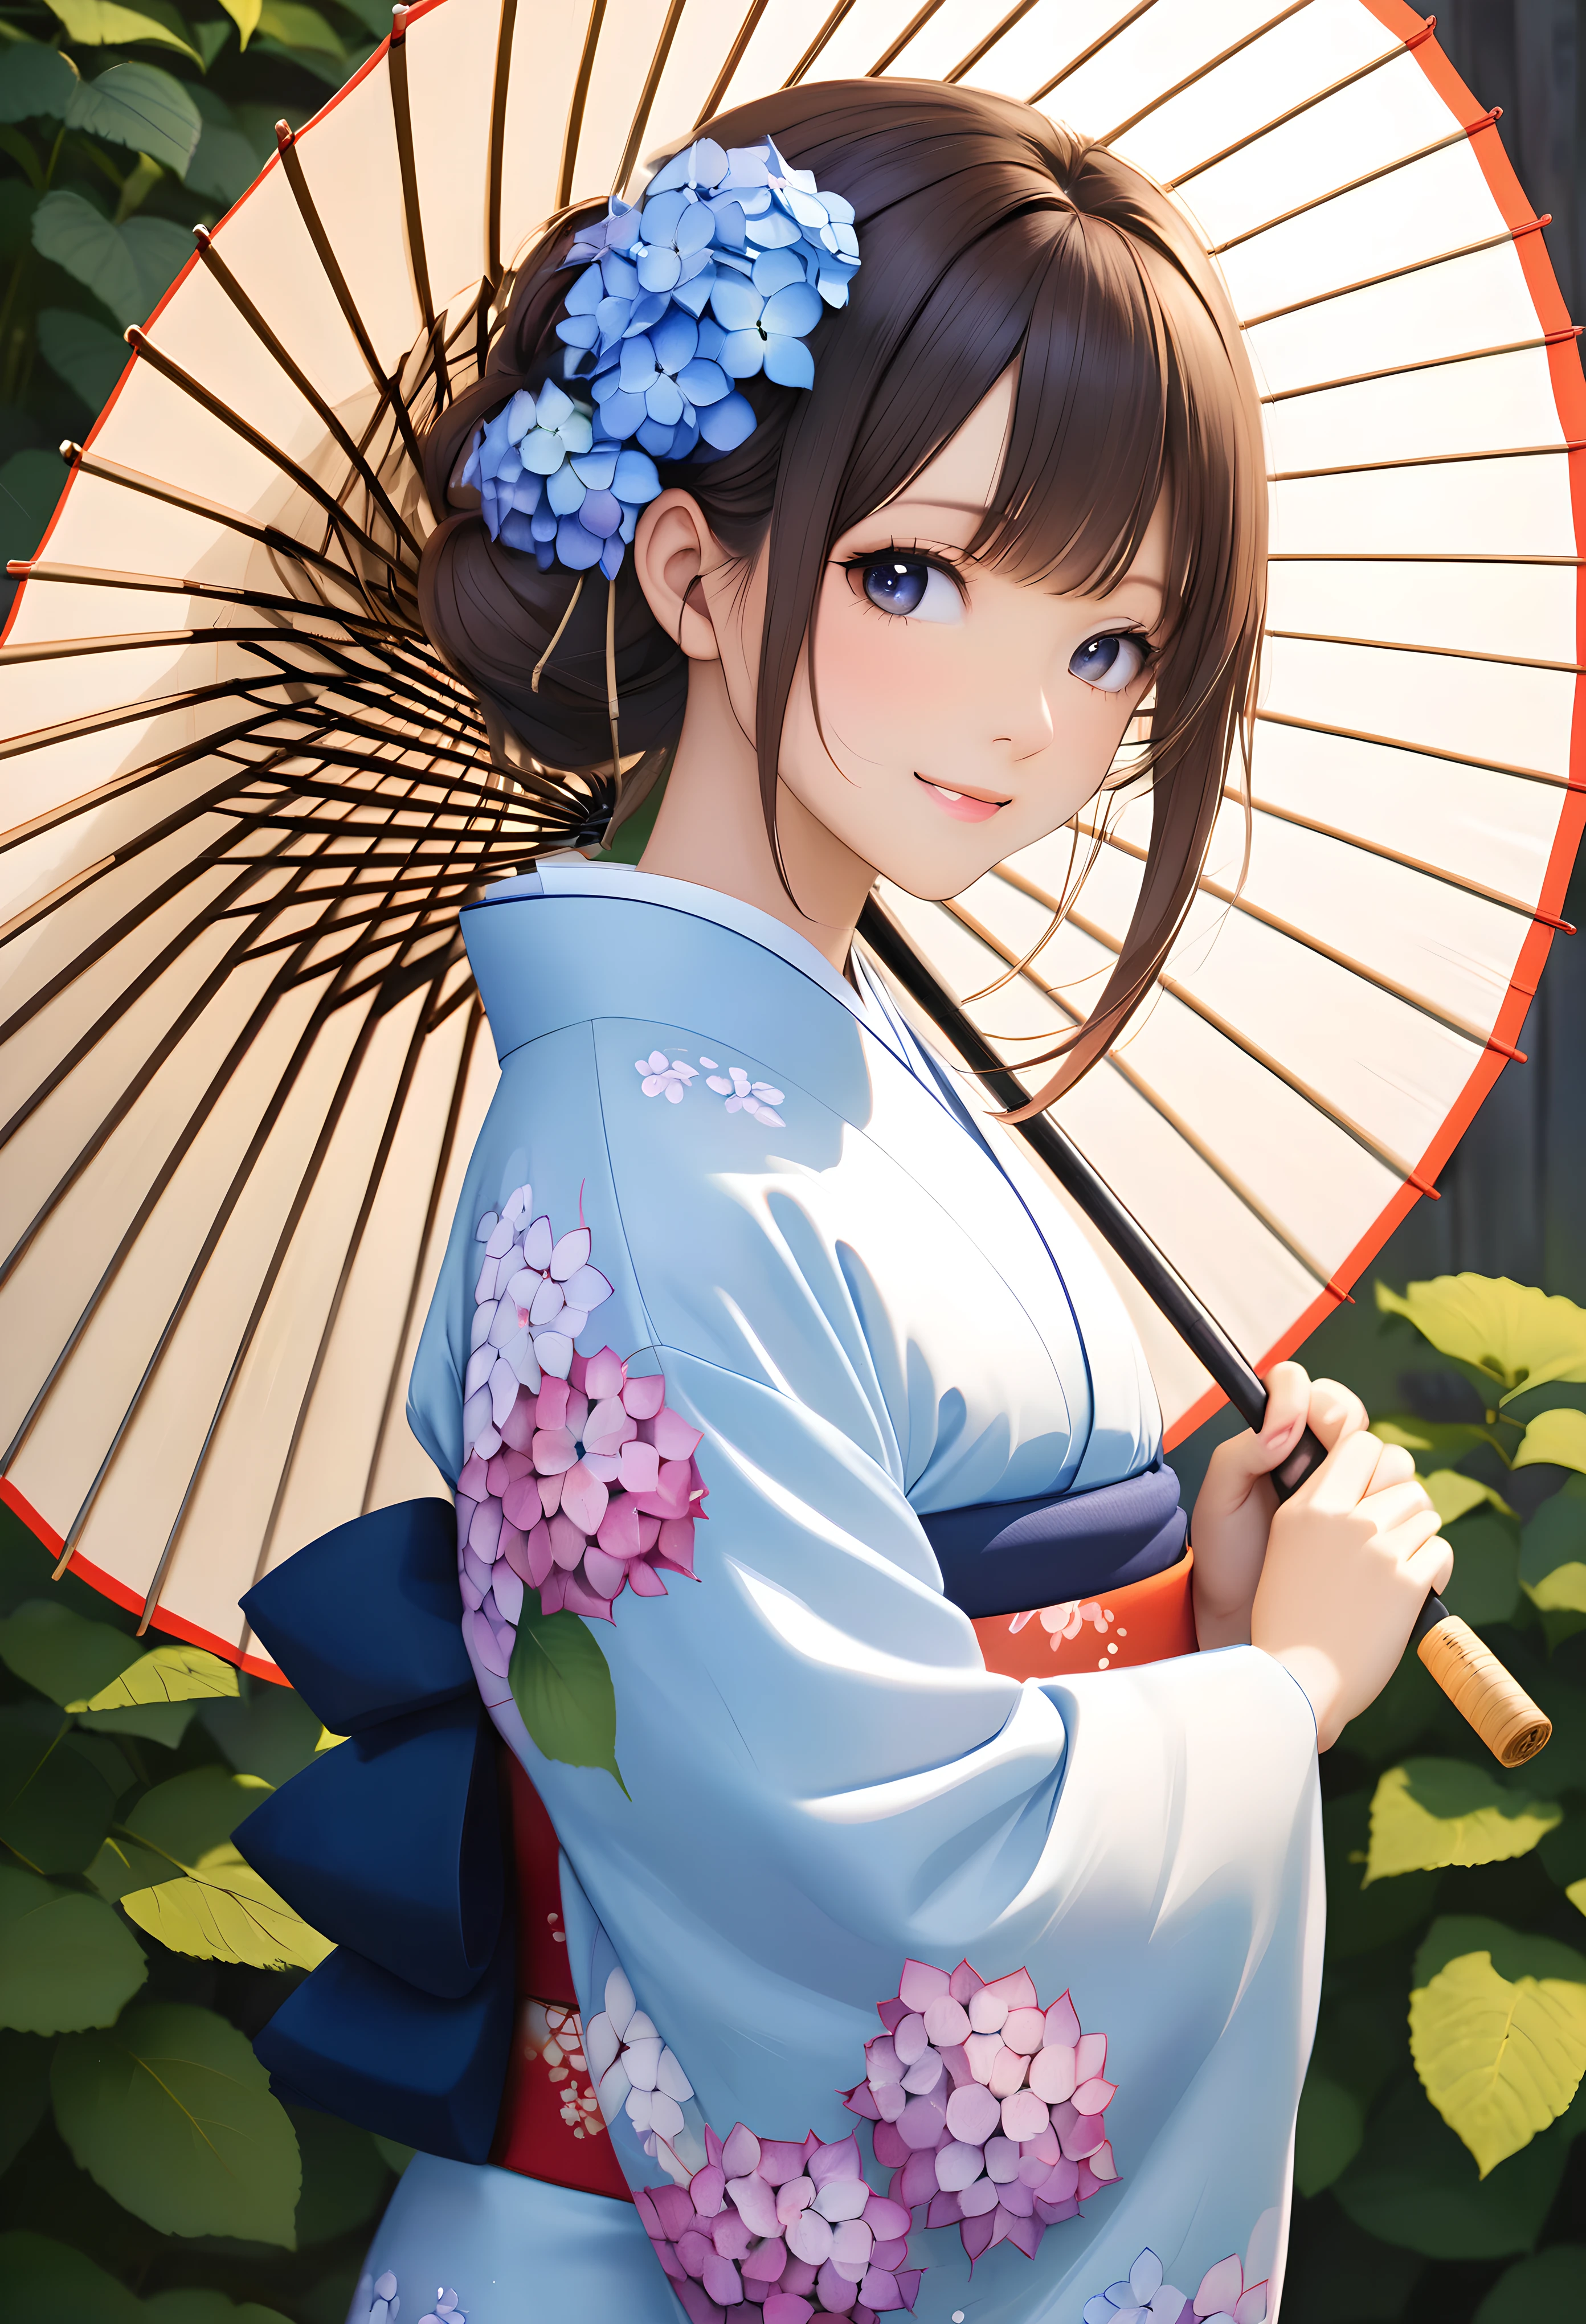 撐著日本傘, BREAK穿著日本服裝, BREAK讓主題脫穎而出的繡球花, 